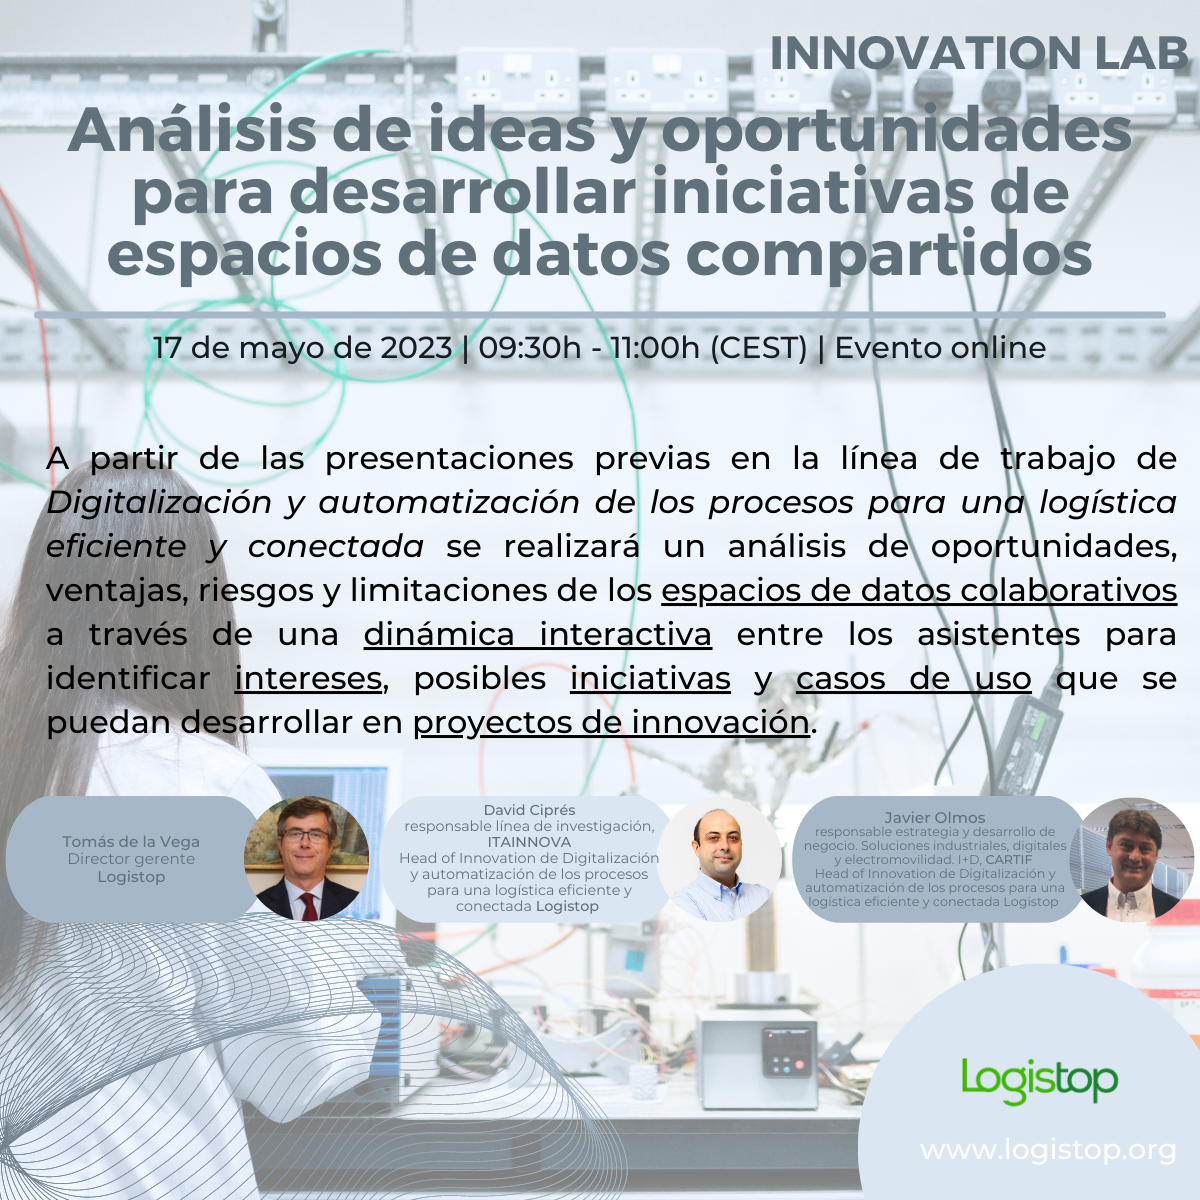 Innovation Lab - Análisis de ideas y oportunidades para desarrollar iniciativas de espacios de datos compartidos